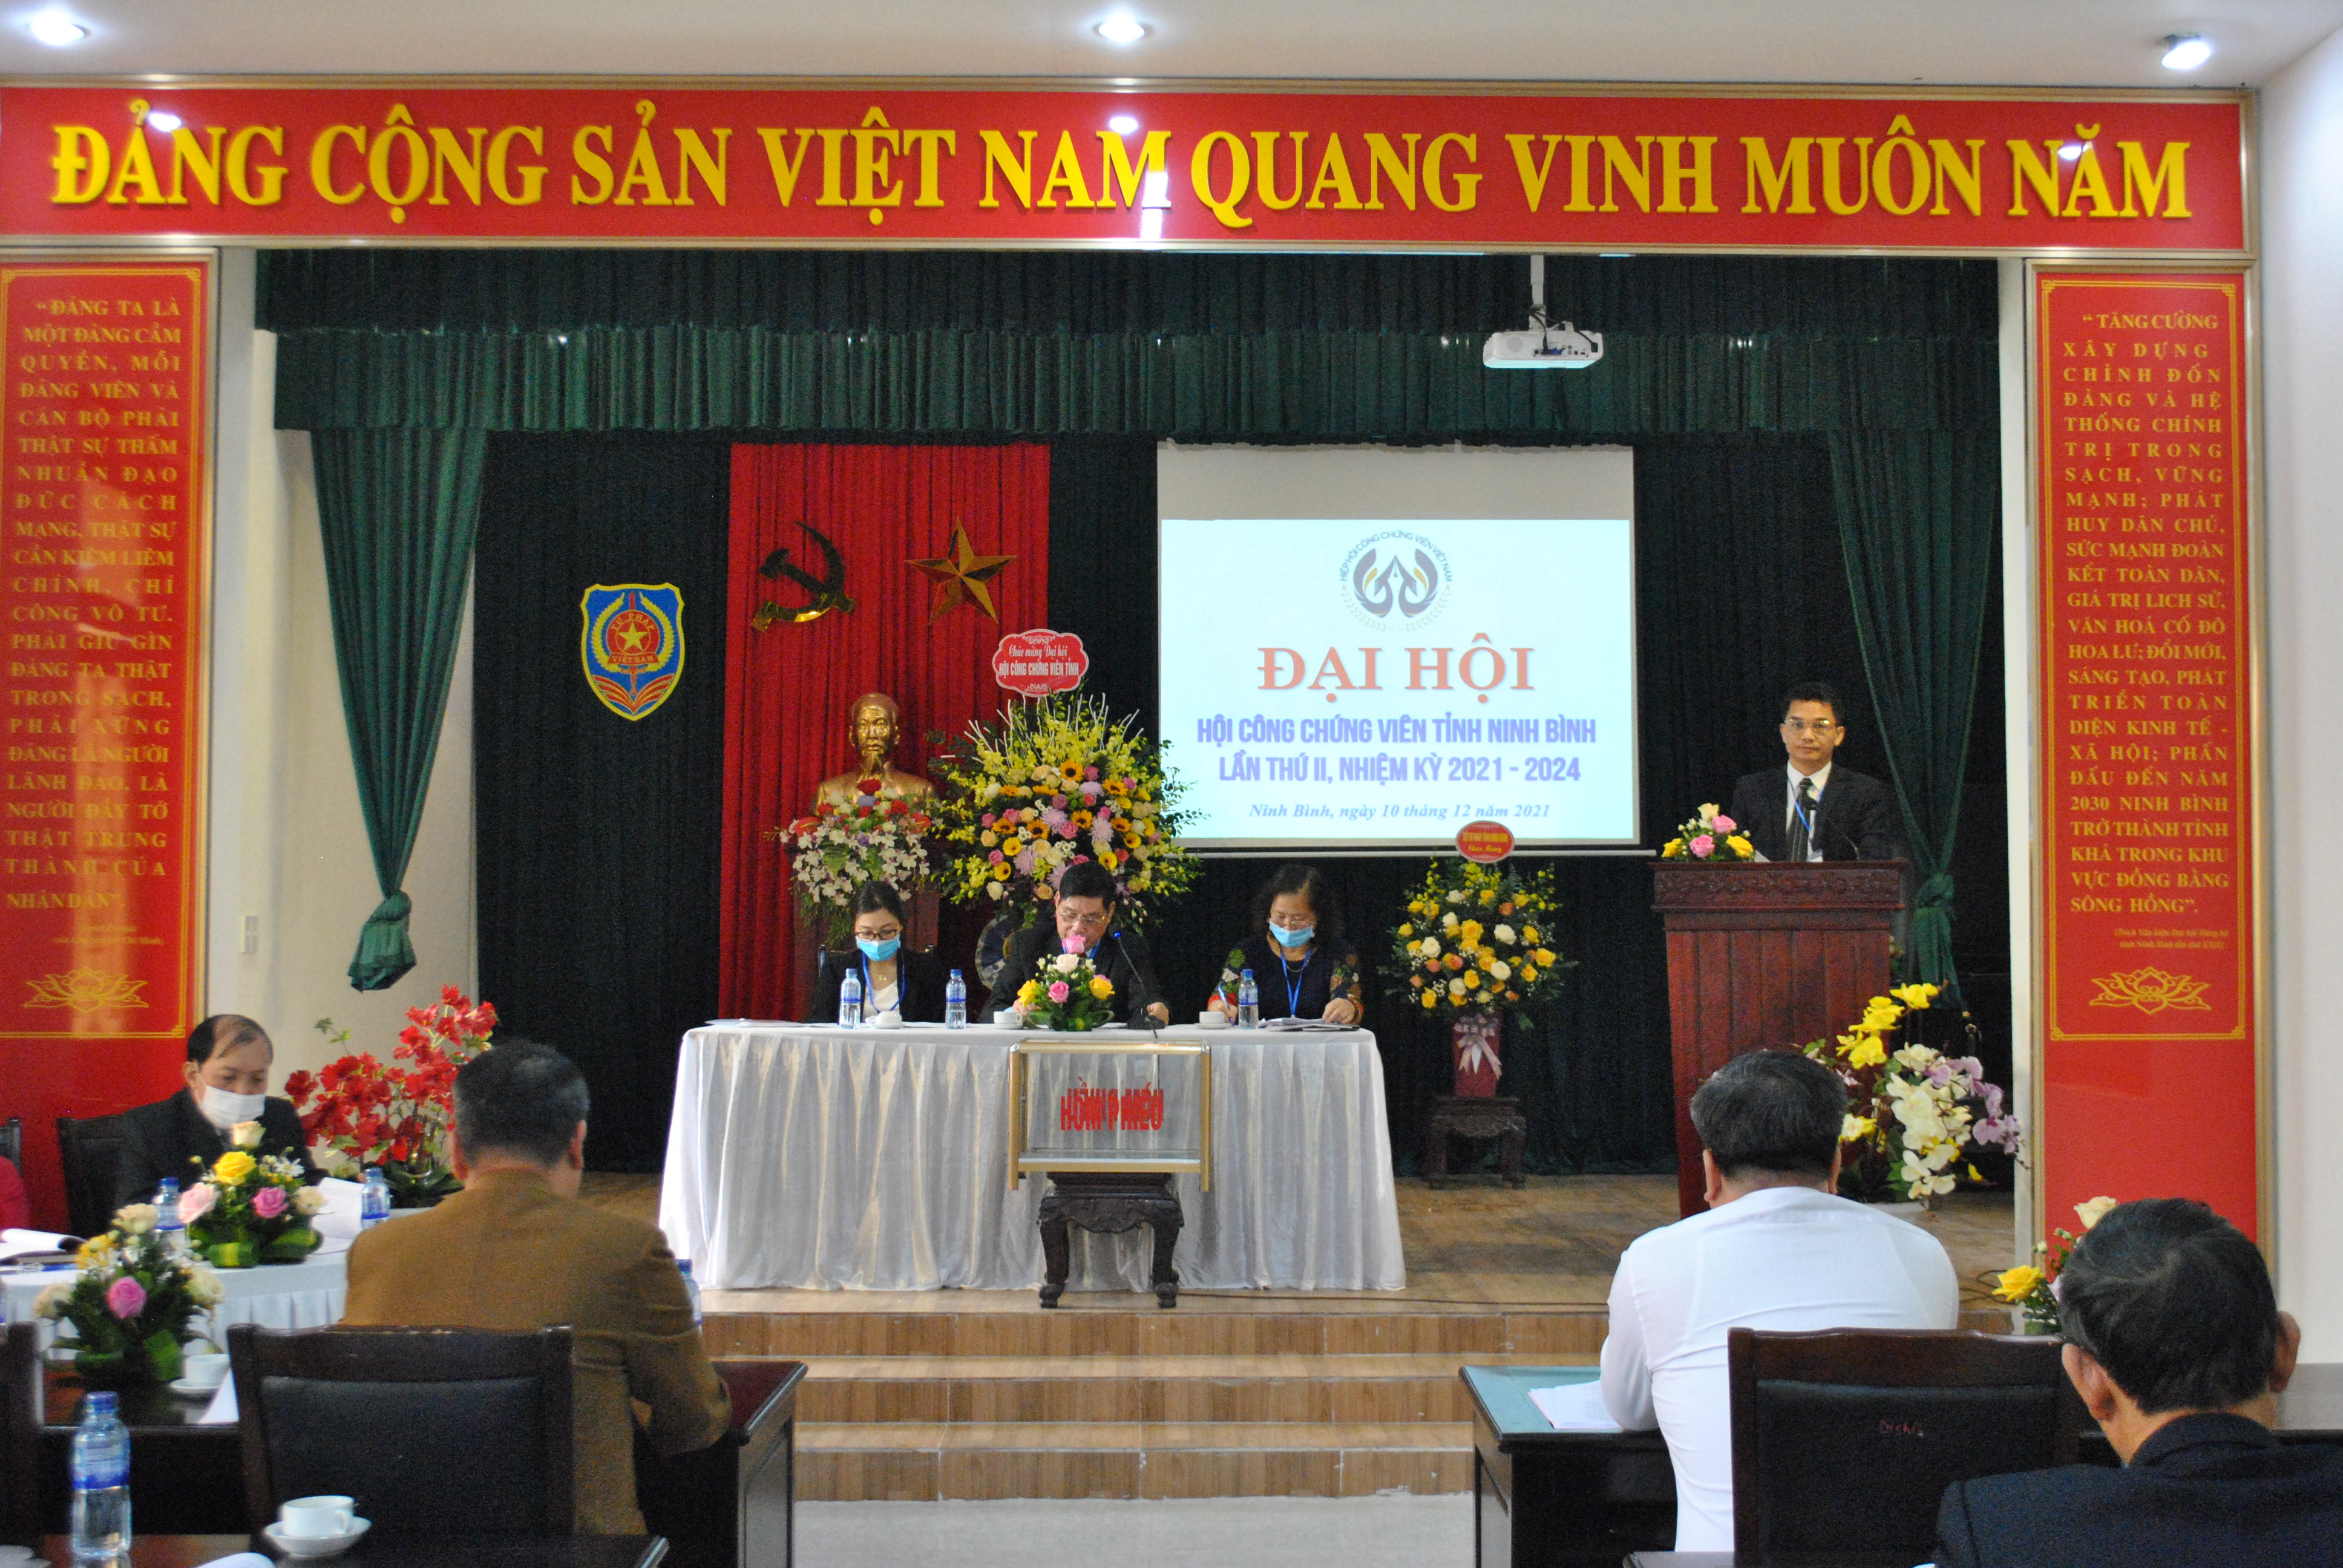 Đại hội công chứng viên tỉnh Ninh Bình lần thứ II, nhiệm kỳ 2021-2024